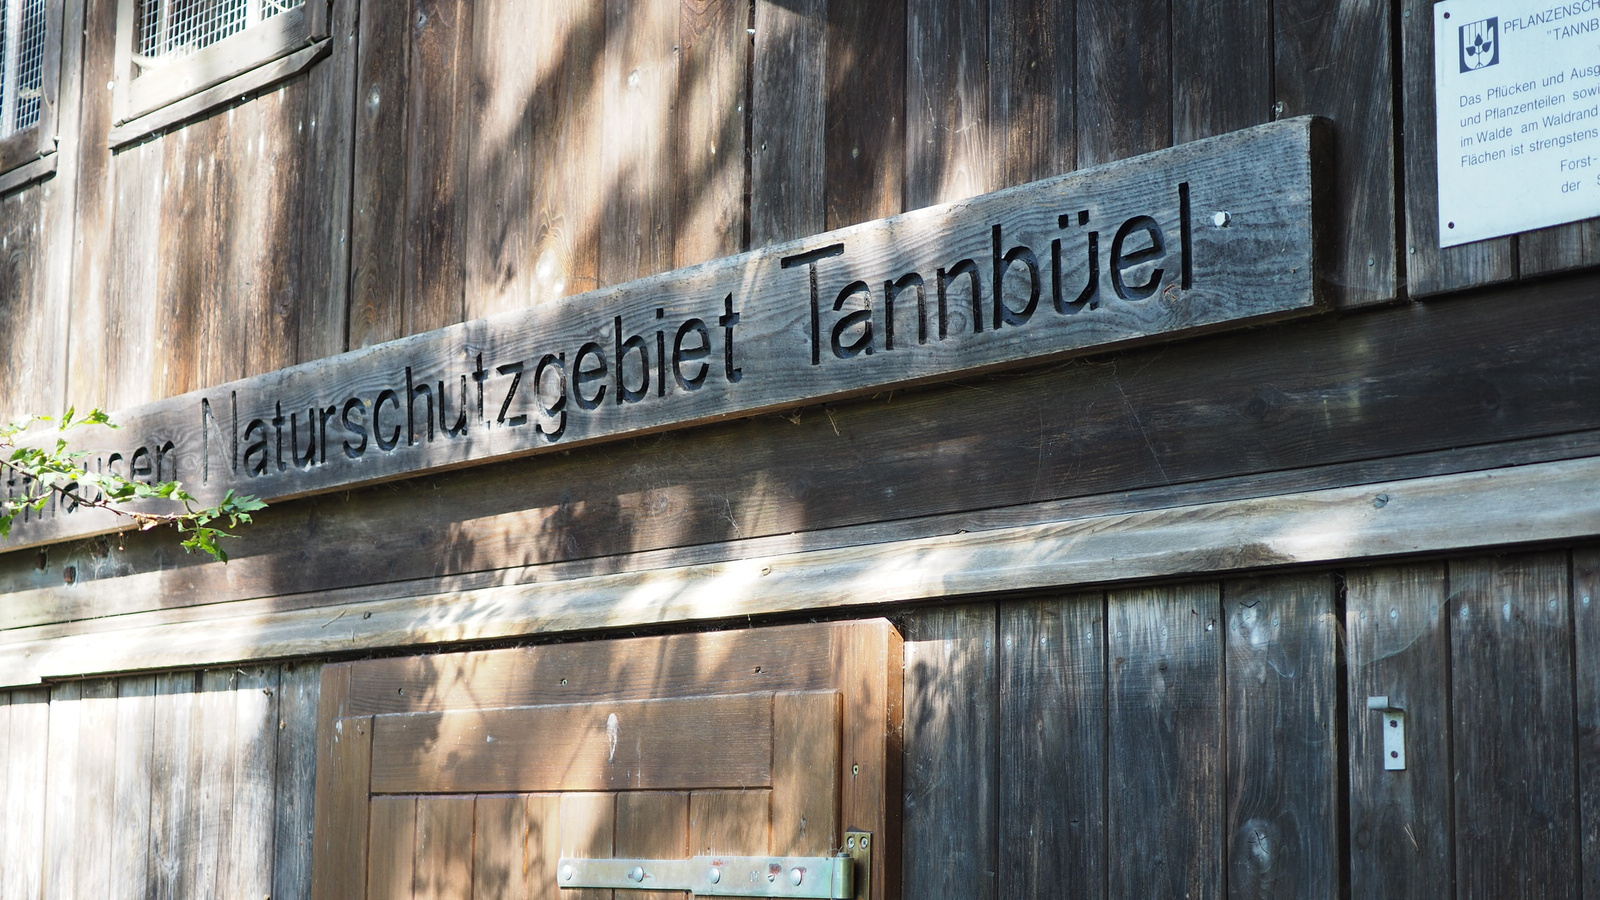 Svájc, Bargen, Naturschutzgebiet Tannbüel, SzG3